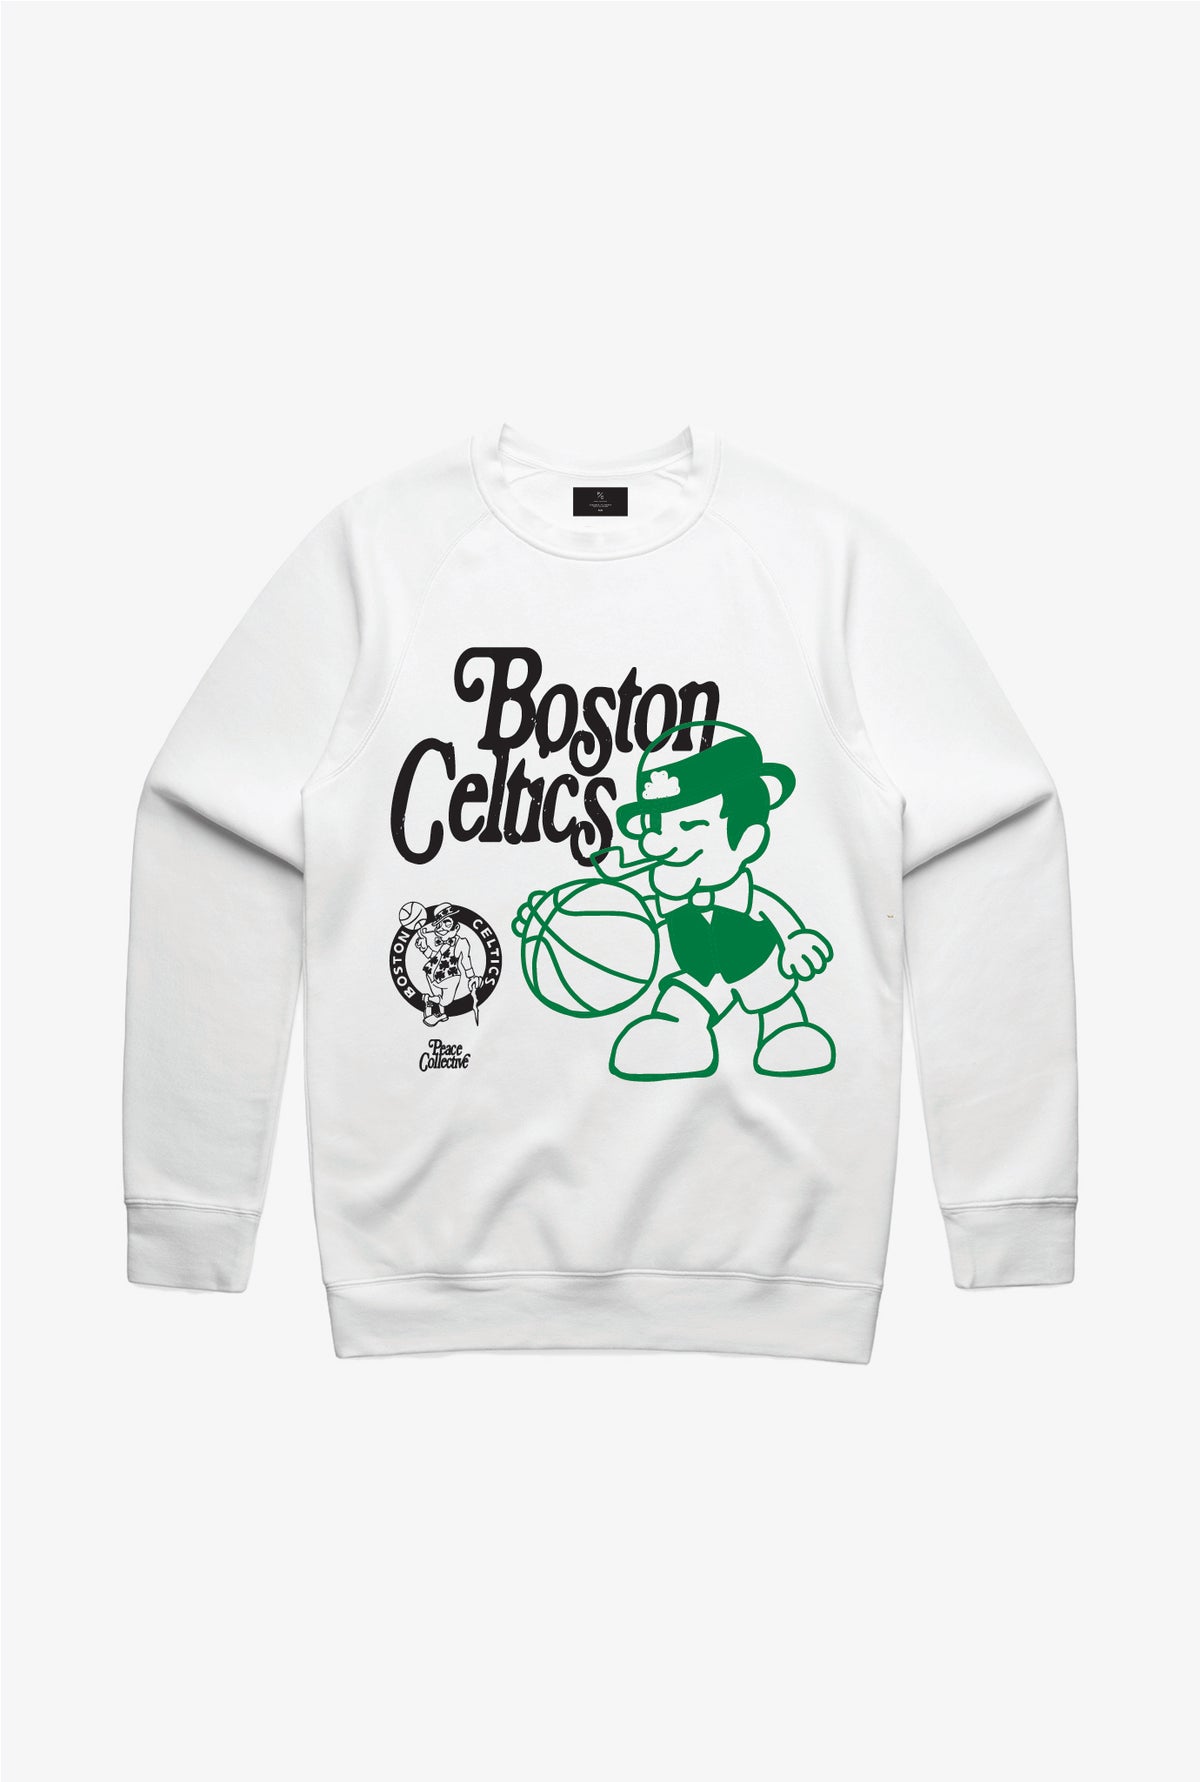 Boston Celtics Mascot Crewneck - White